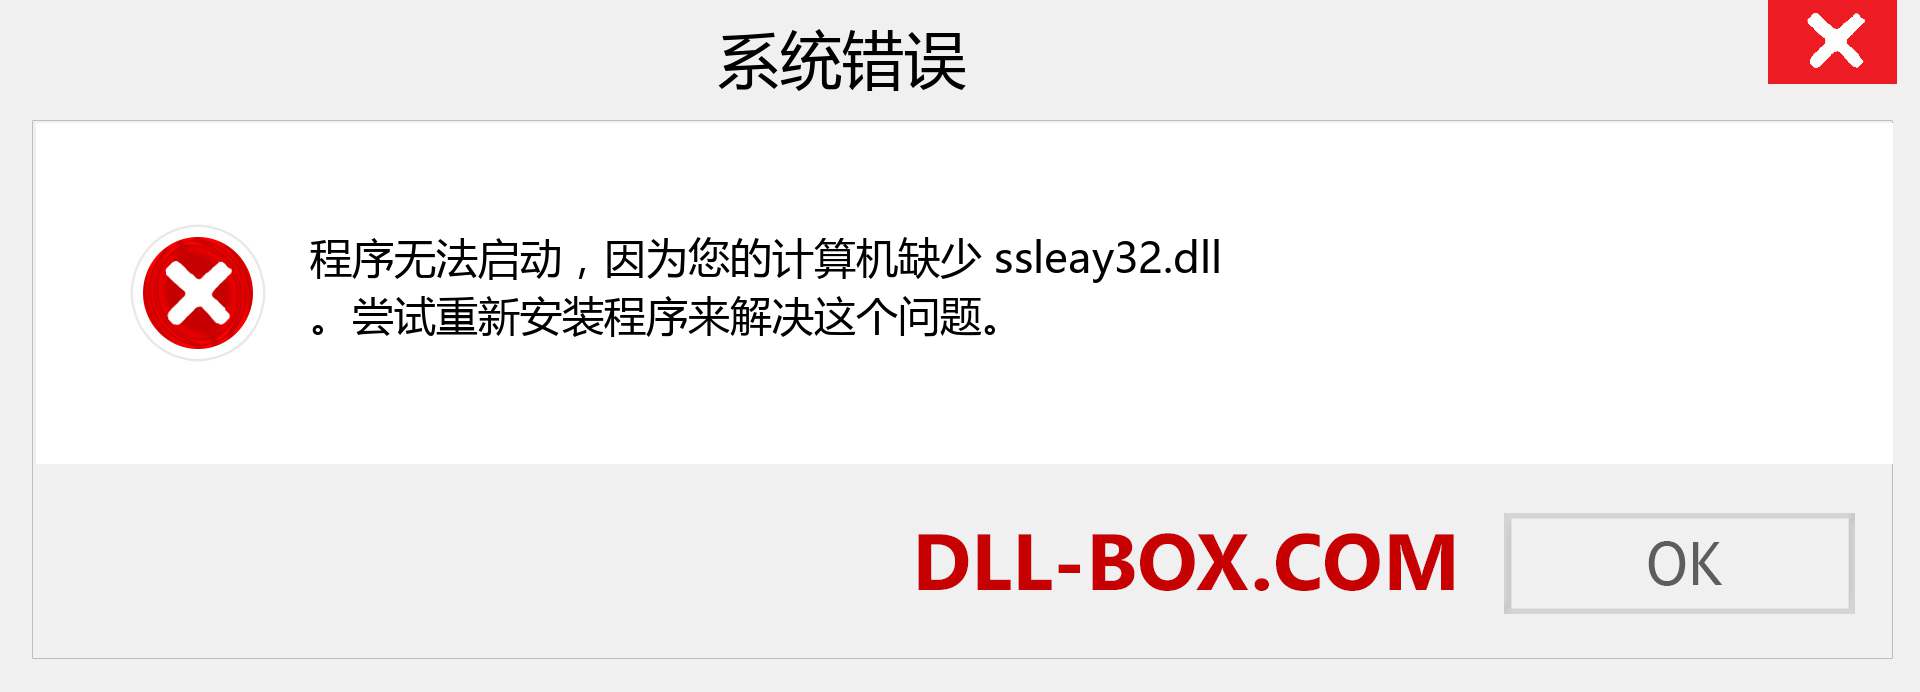 ssleay32.dll 文件丢失？。 适用于 Windows 7、8、10 的下载 - 修复 Windows、照片、图像上的 ssleay32 dll 丢失错误